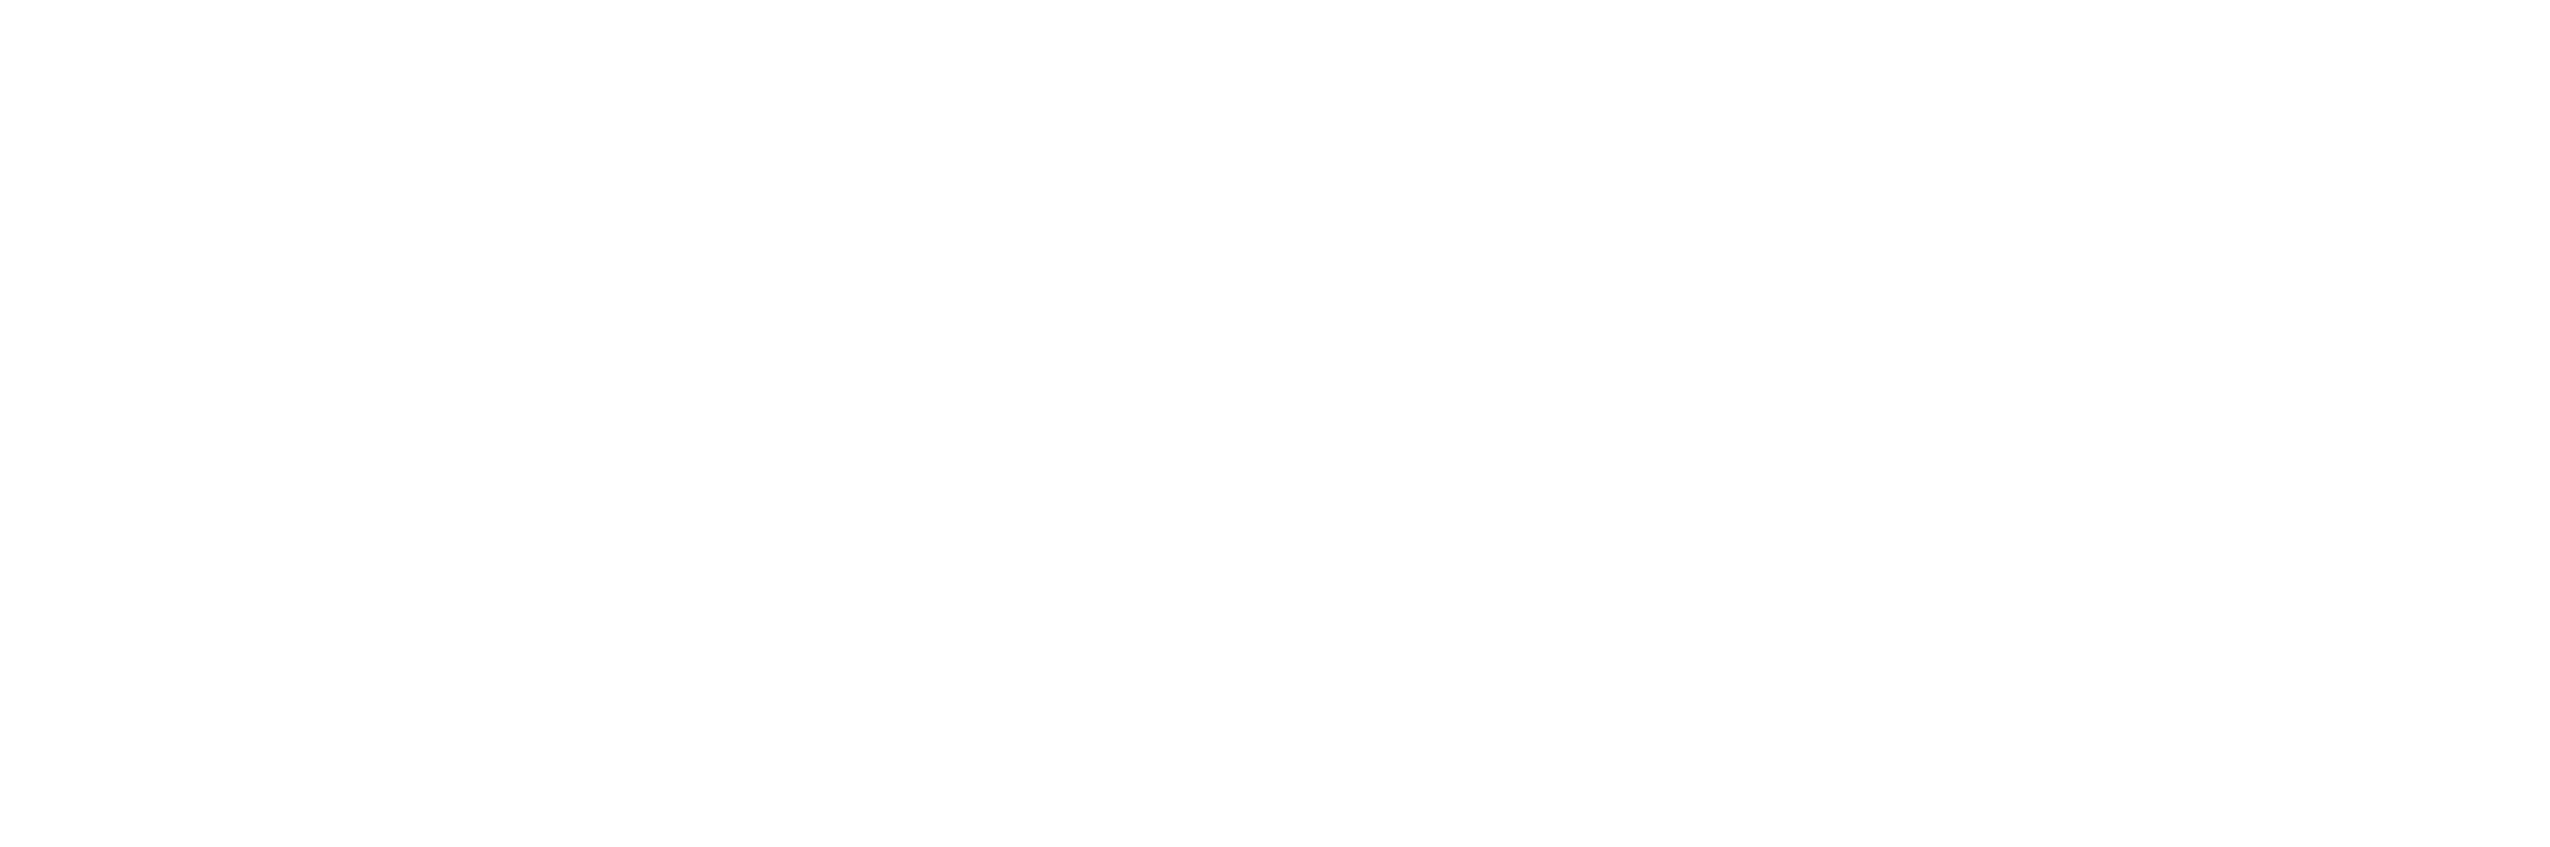 Max Healthcare Institute logo grand pour les fonds sombres (PNG transparent)